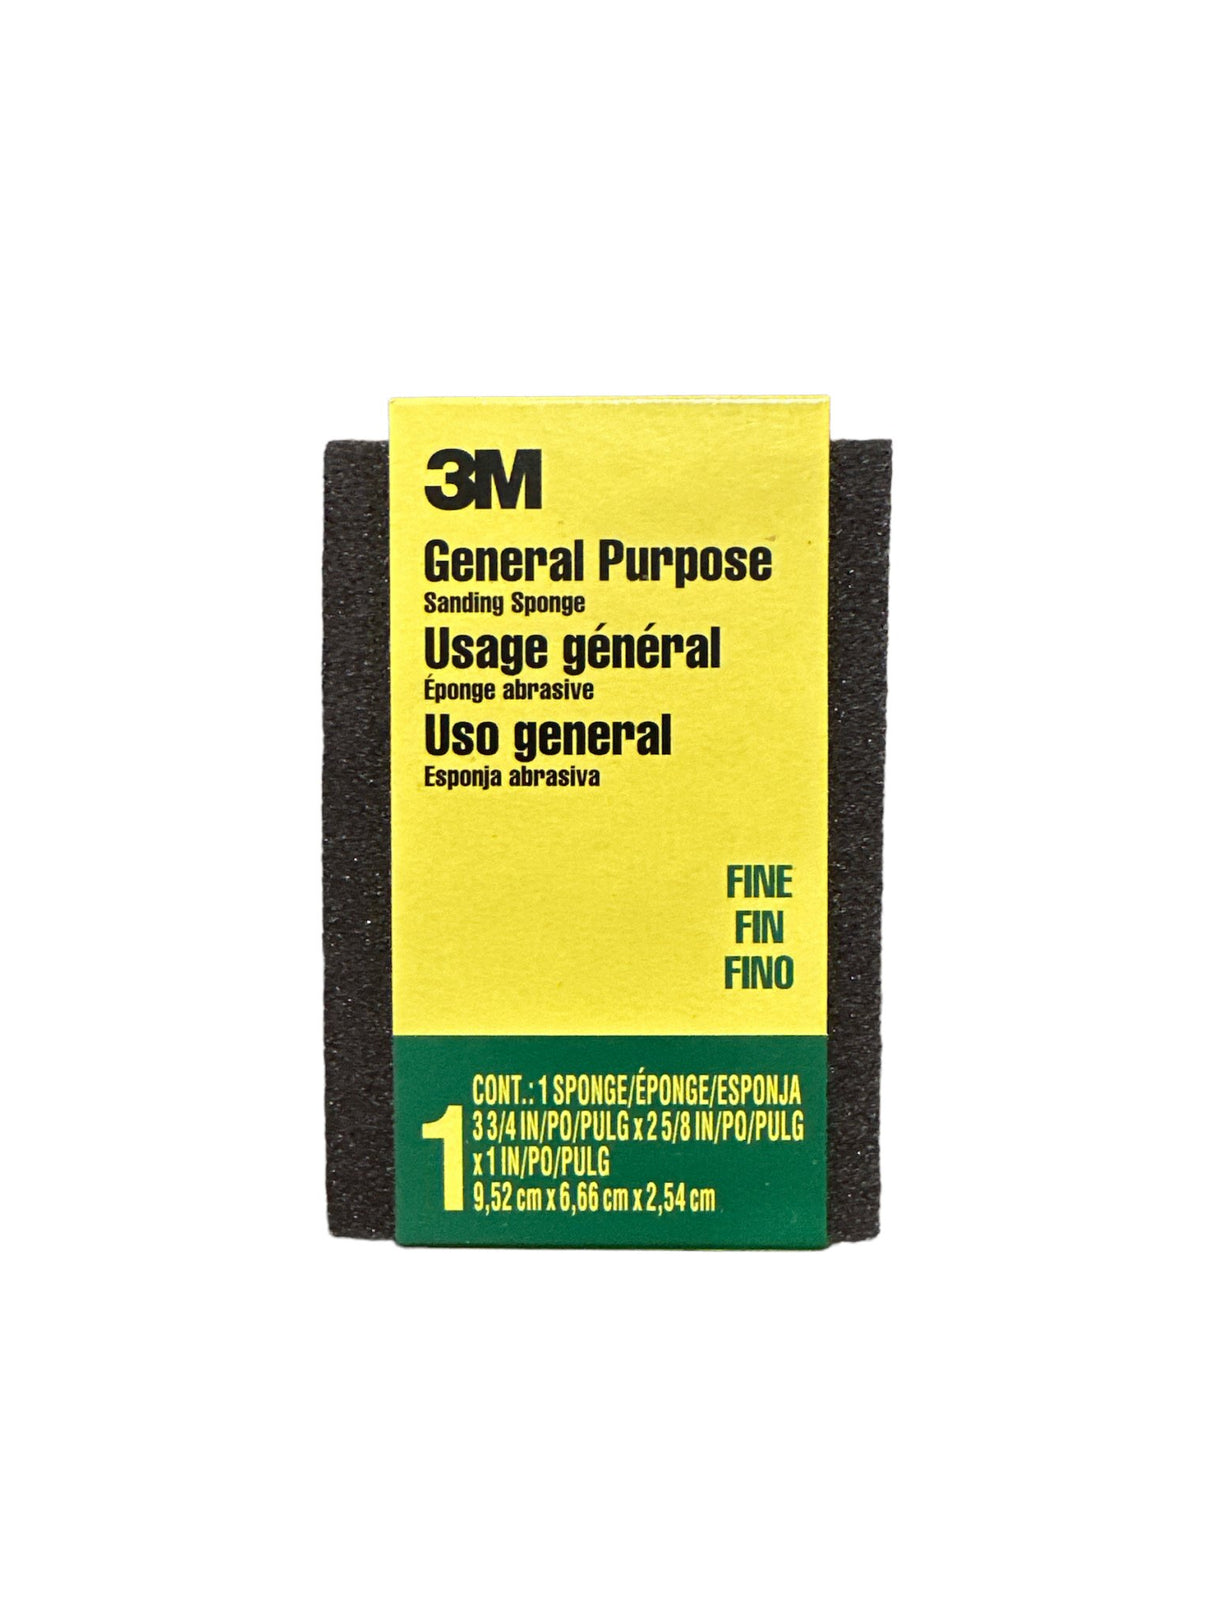 3M General Purpose General Purpose Sanding Sponge - Fine